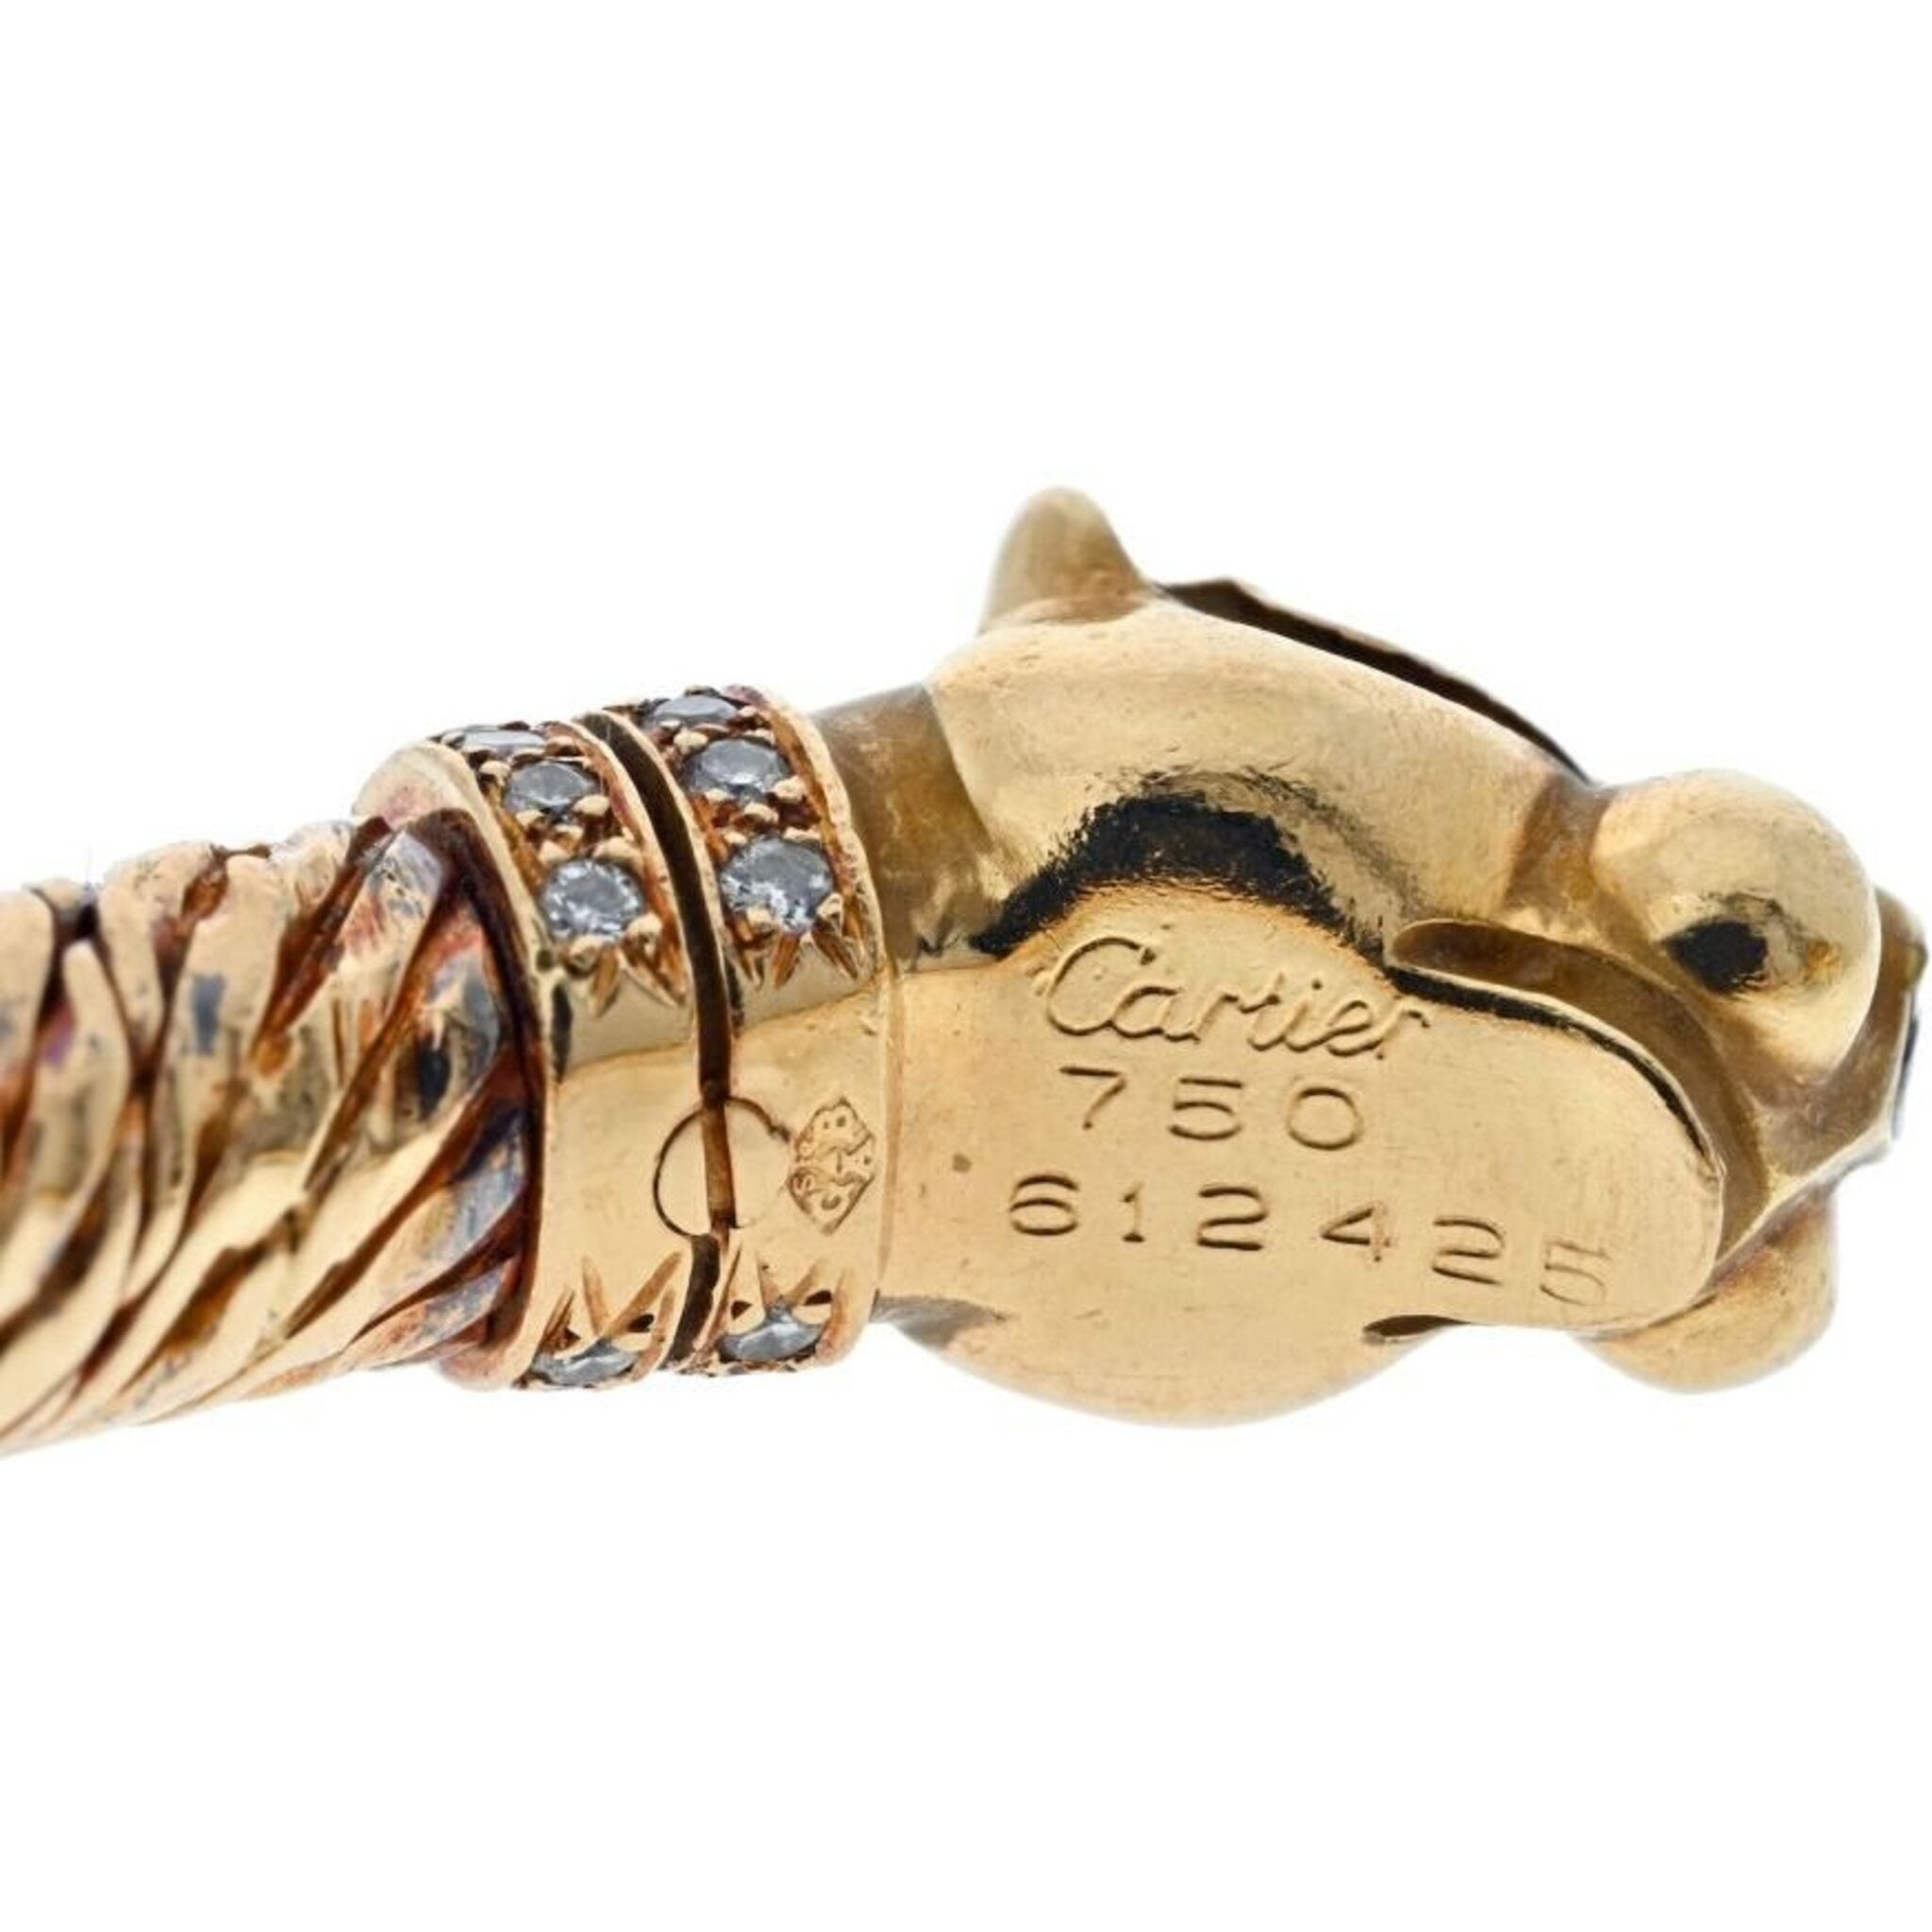 CRH6031917 - Panthère de Cartier bracelet - White gold, emerald, onyx,  diamonds - Cartier